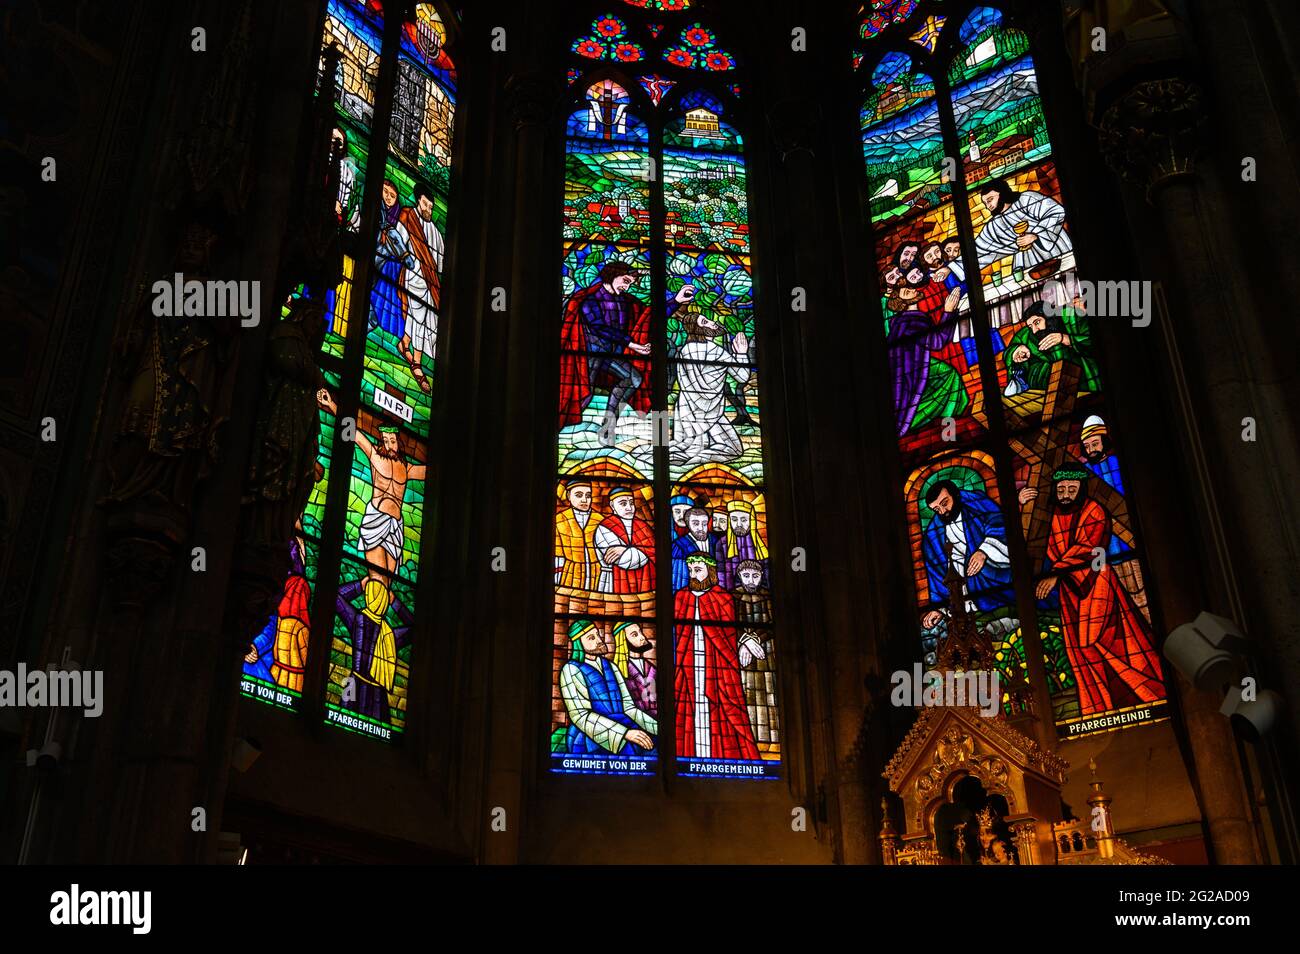 Buntglasfenster mit Darstellung der Passion Jesu Christi. Votivkirche – Votivkirche, Wien, Österreich. Stockfoto